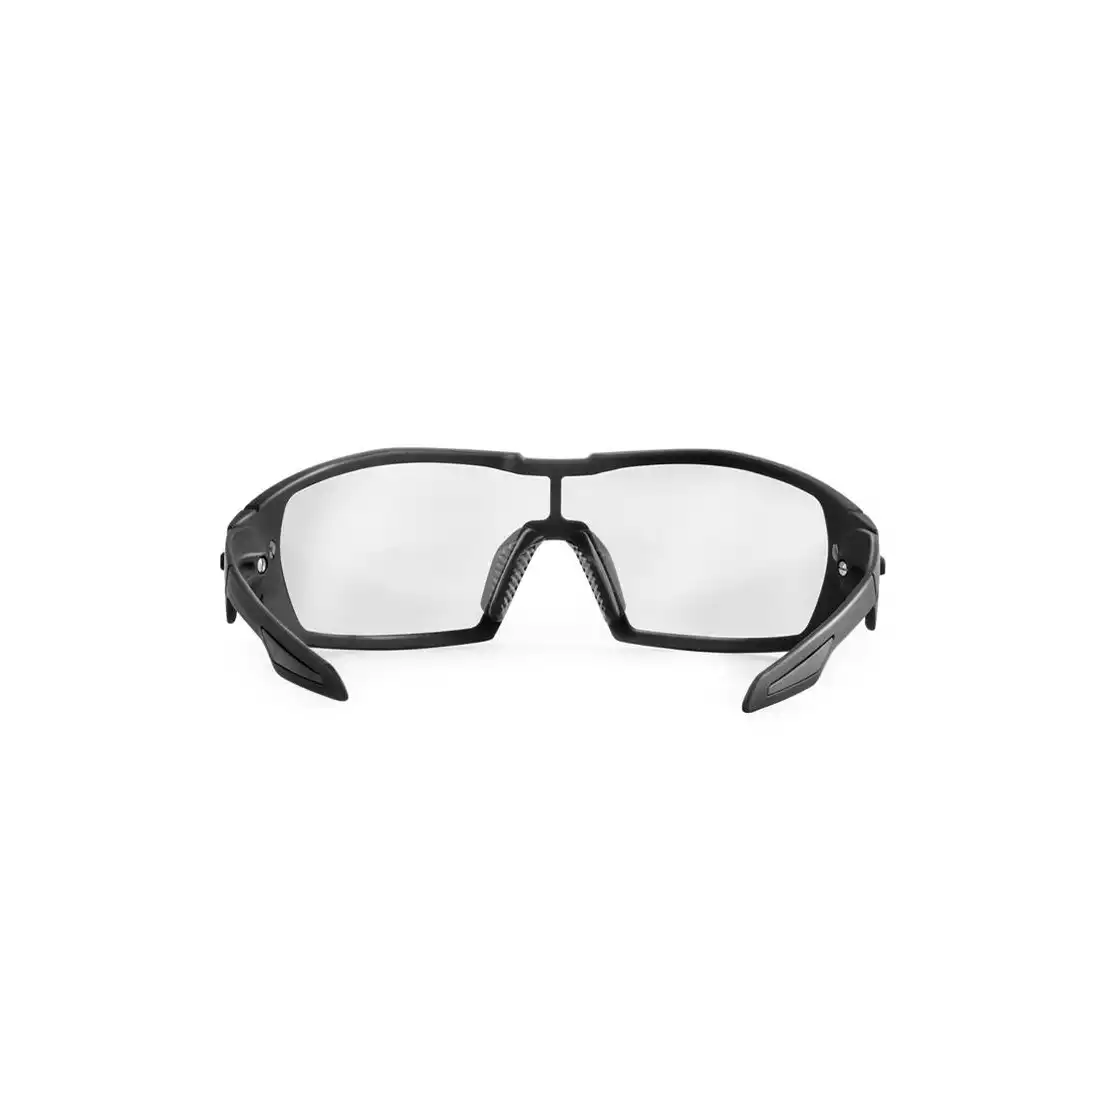 KOO OPEN - okulary sportowe BLACK CEY00002.201 - black-szkło-smokemirror/clear